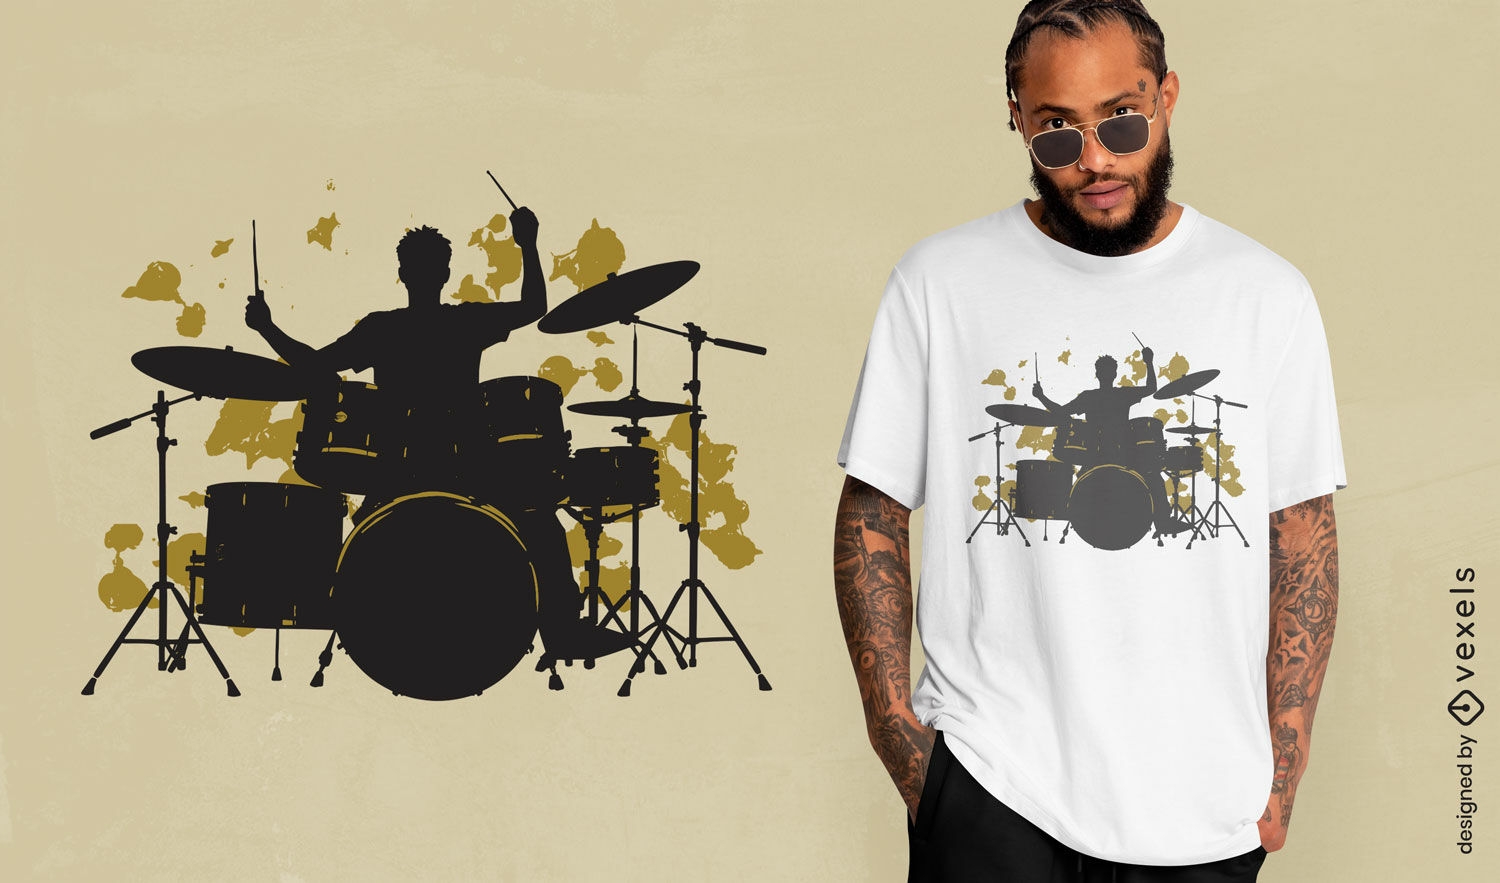 Lebhaftes T-Shirt-Design mit Schlagzeuger-Silhouette